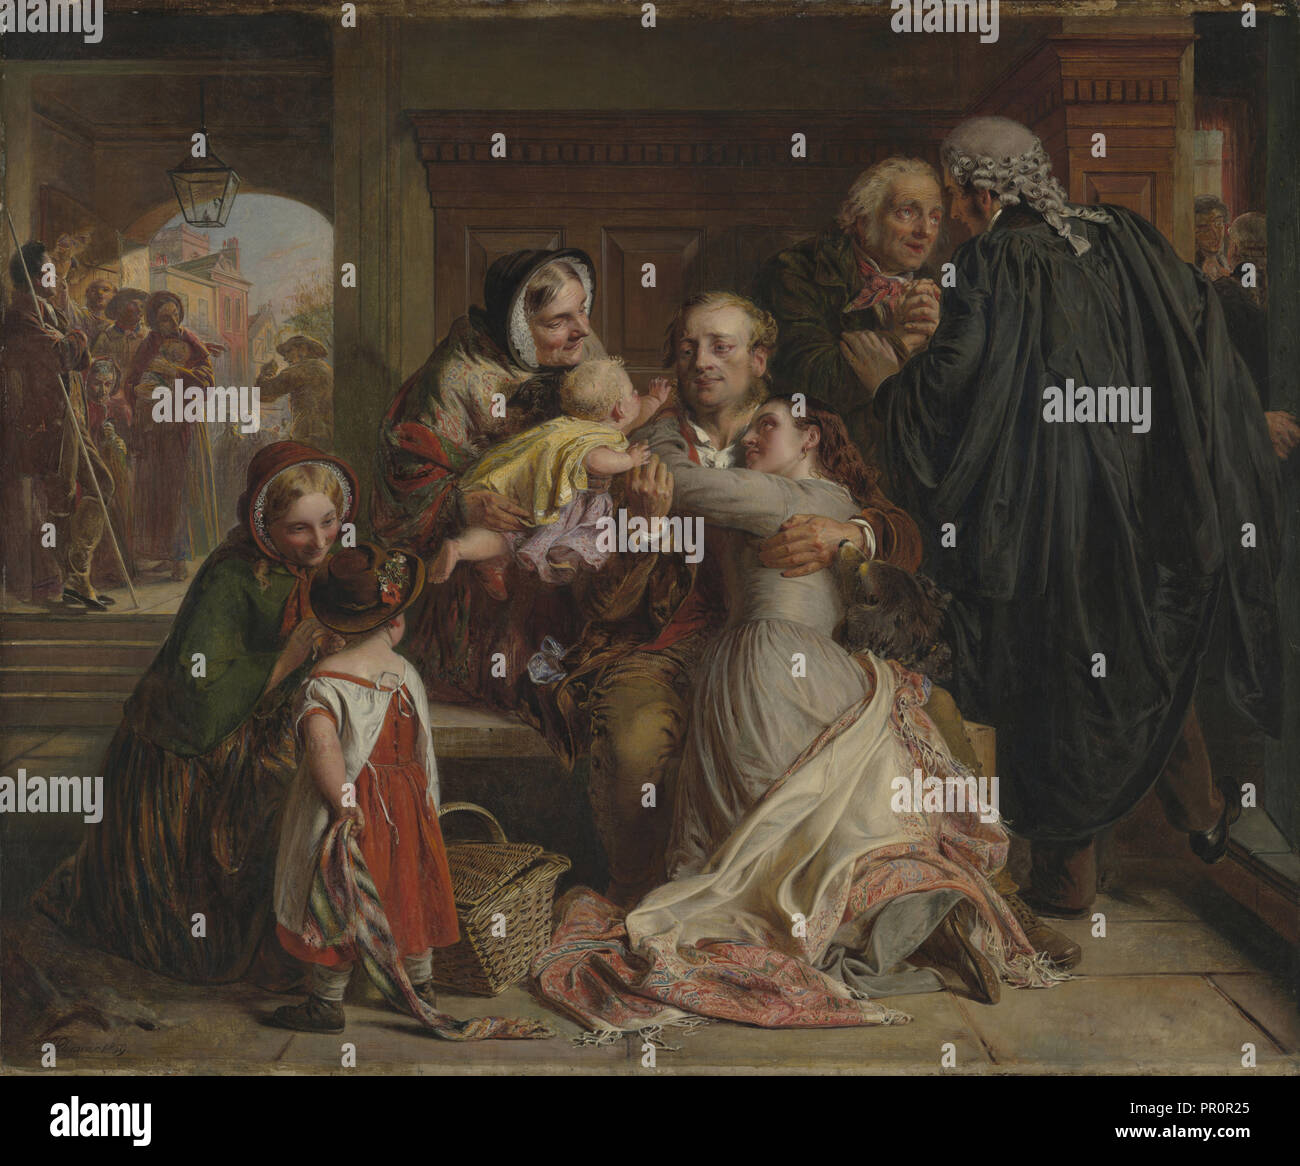 Non coupable ; Abraham Solomon, britannique, 1824 - 1862, l'Angleterre ; 1859 ; Huile sur toile ; 63,5 x 88,9 cm, 25 x 35 en Banque D'Images